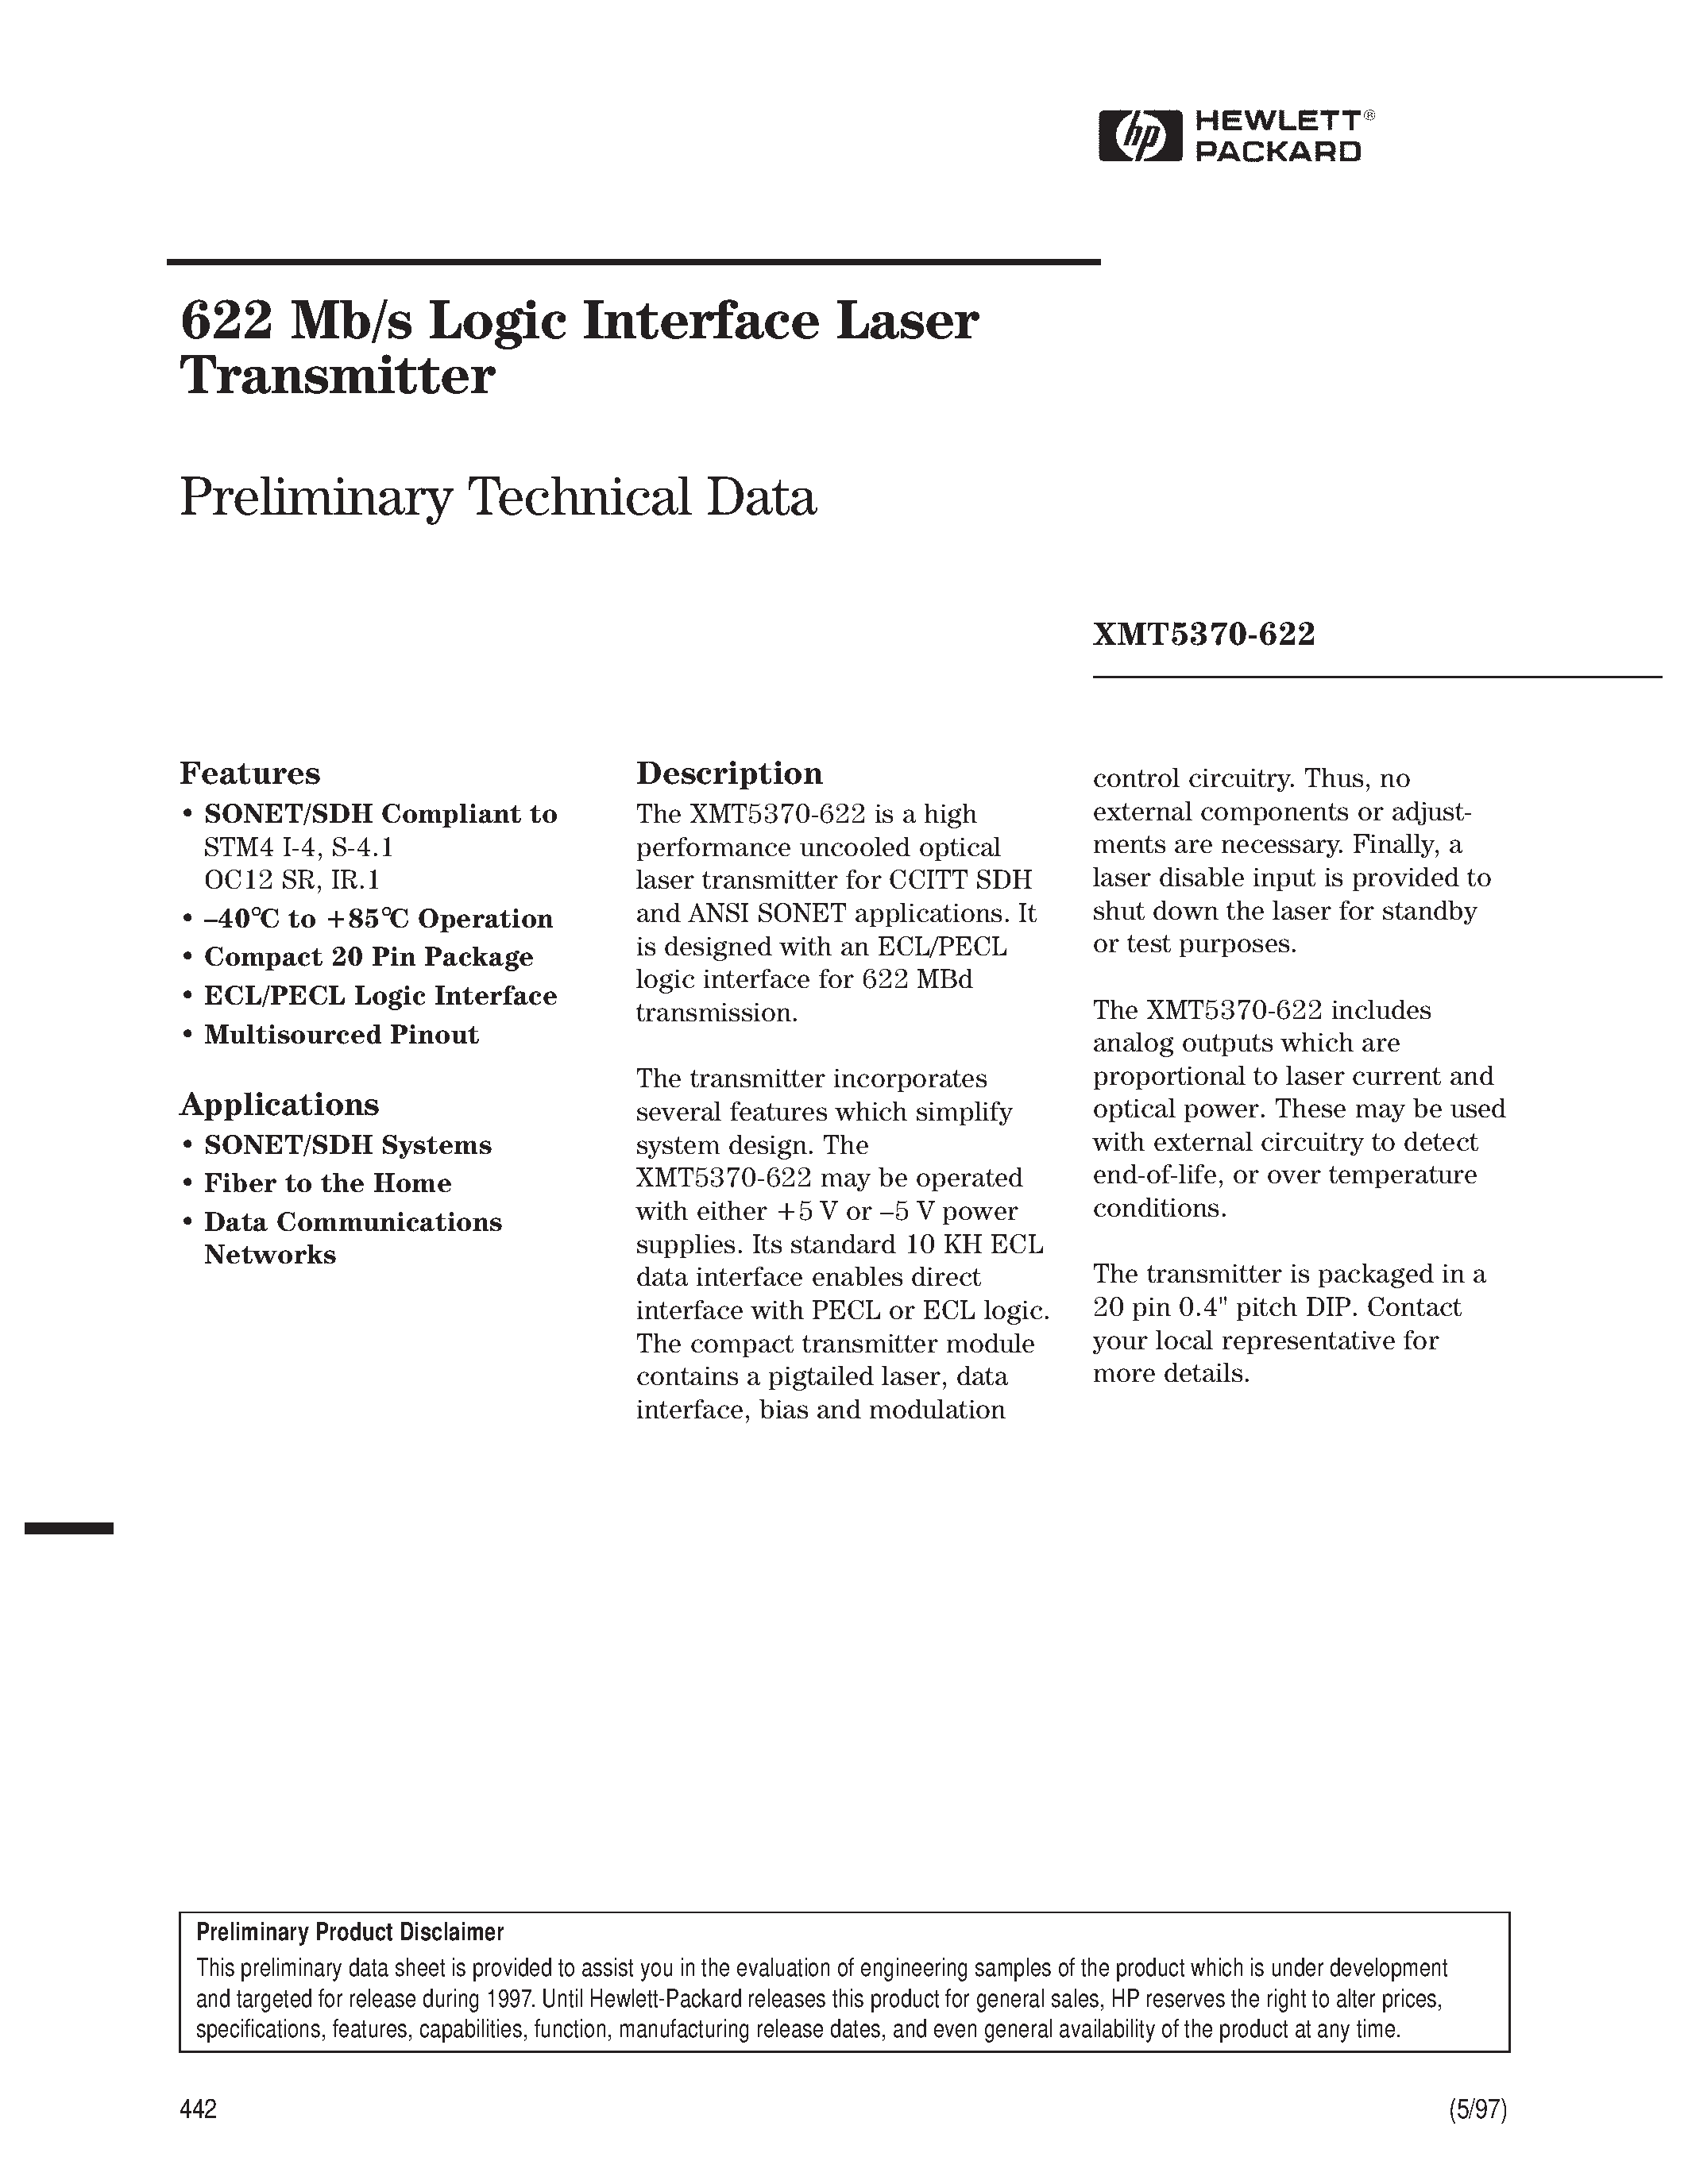 Datasheet XMT5370A-622-FP - 622 Mb/s Logic Interface Laser Transmitter page 1